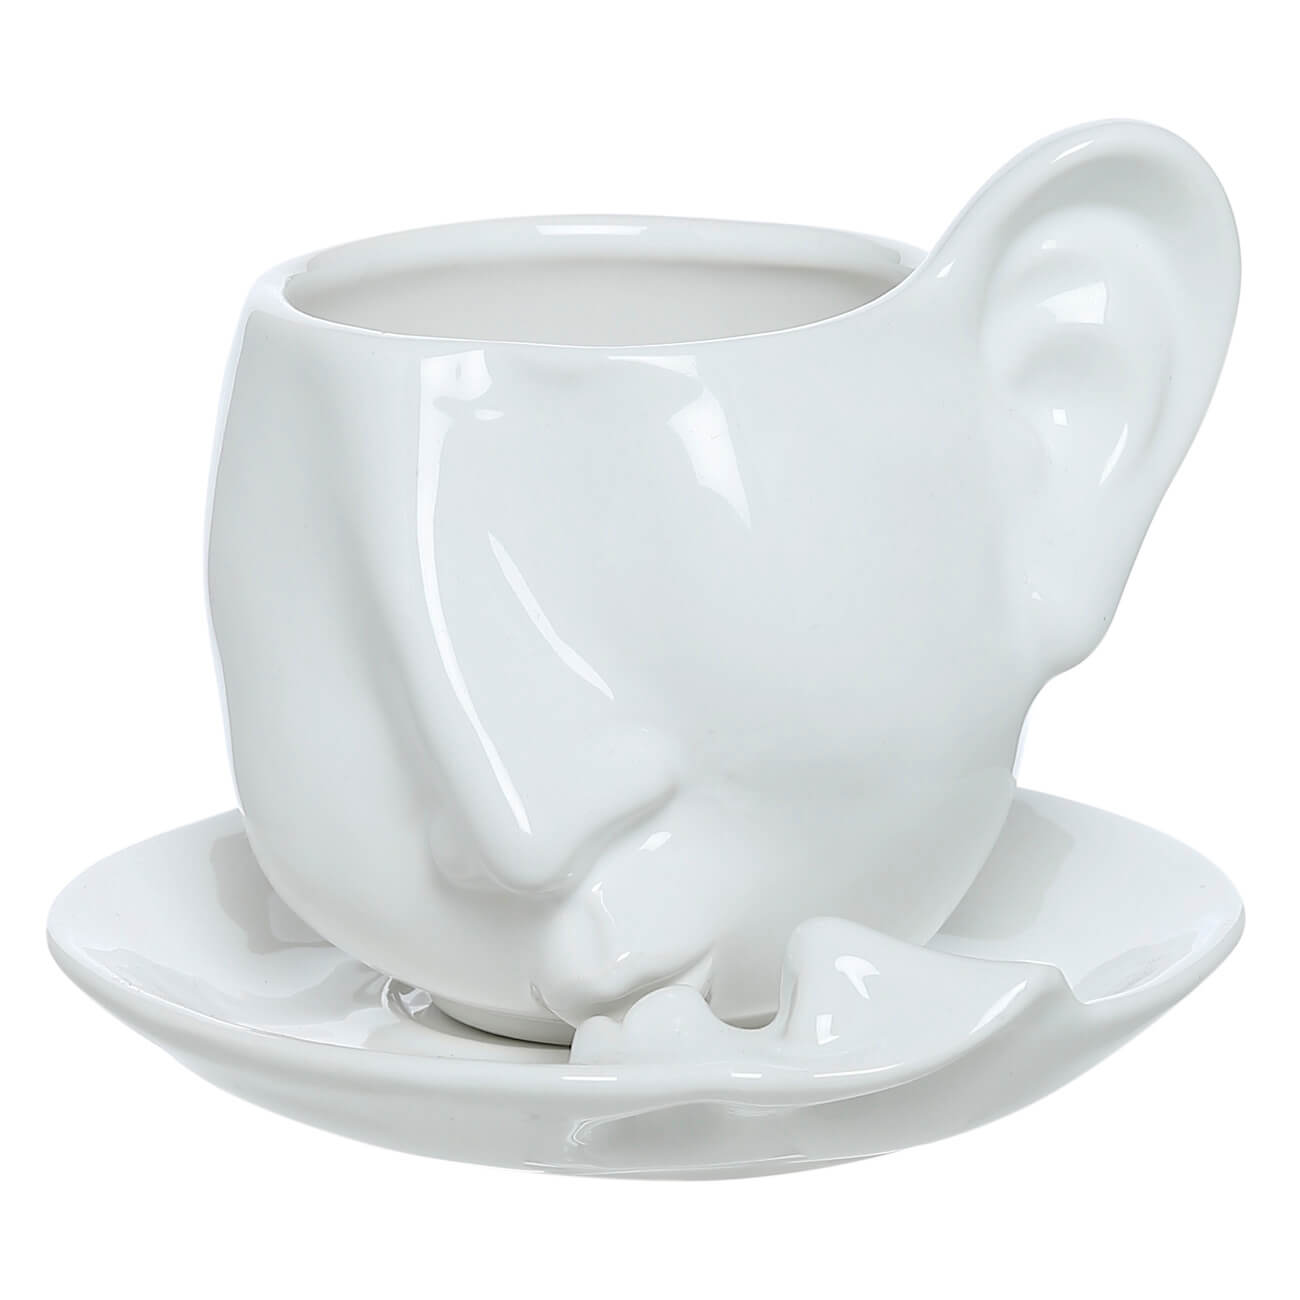 Пара чайная, 1 перс, 2 пр, 260 мл, керамика, белая, Поцелуй, He&She пара чайная чашка блюдце 240 мл tudor tu9999 3